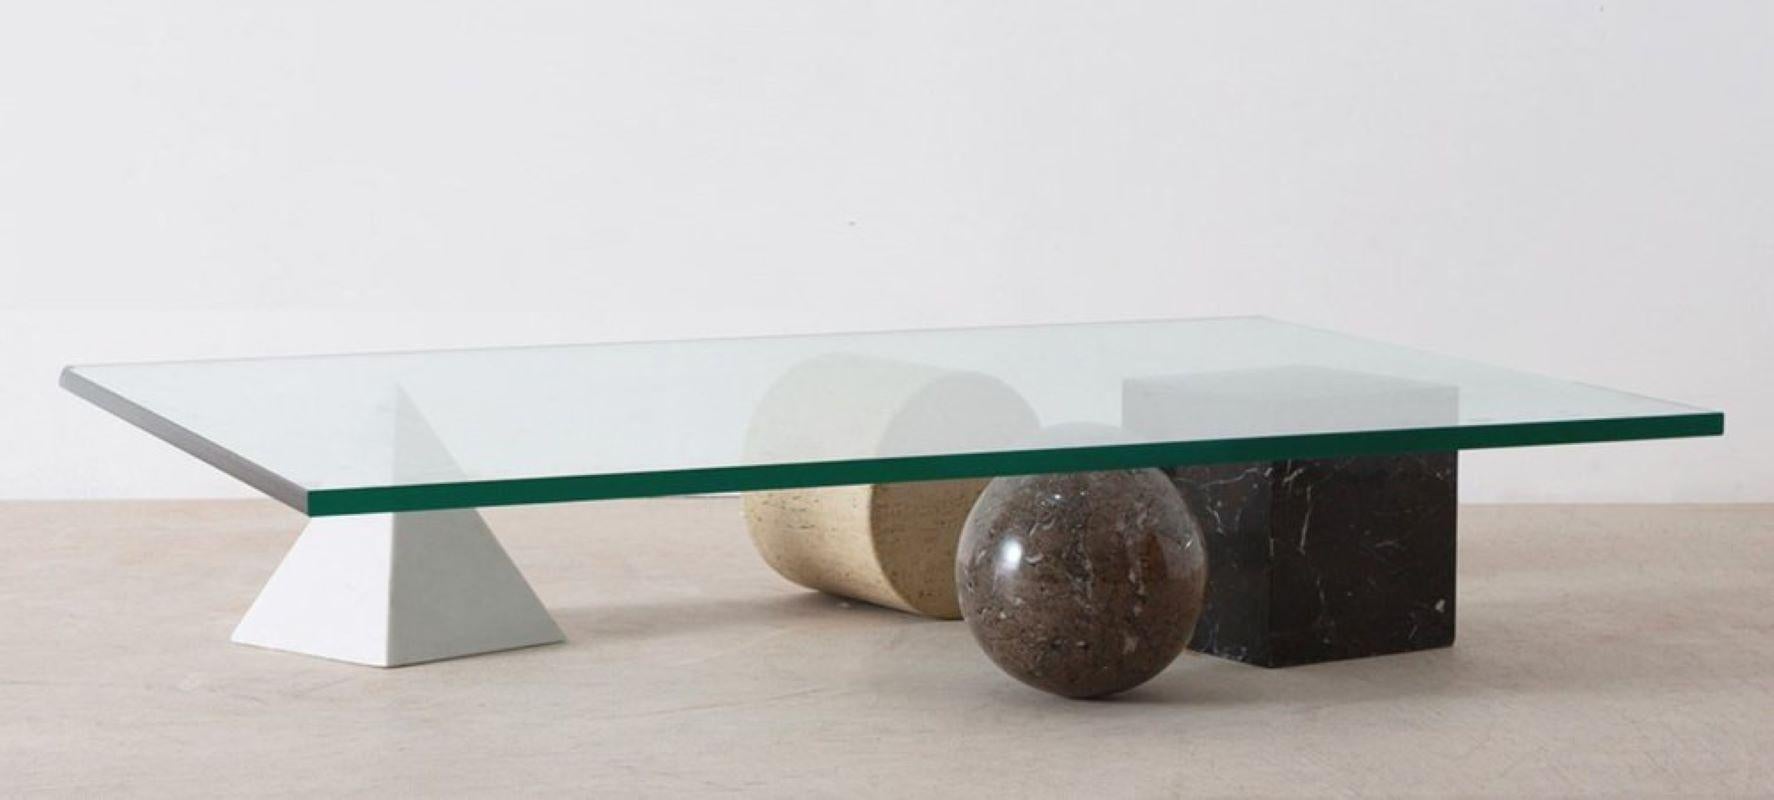 Metafora #1 - Tavolino basso

Ideato negli USA da Lella e Massimo Vignelli e realizzato in Italia da Maurizio Casigliani, questo sistema di elementi (un piano in vetro e quattro supporti di geometria euclidea in marmo) da assemblare in tavolo basso,